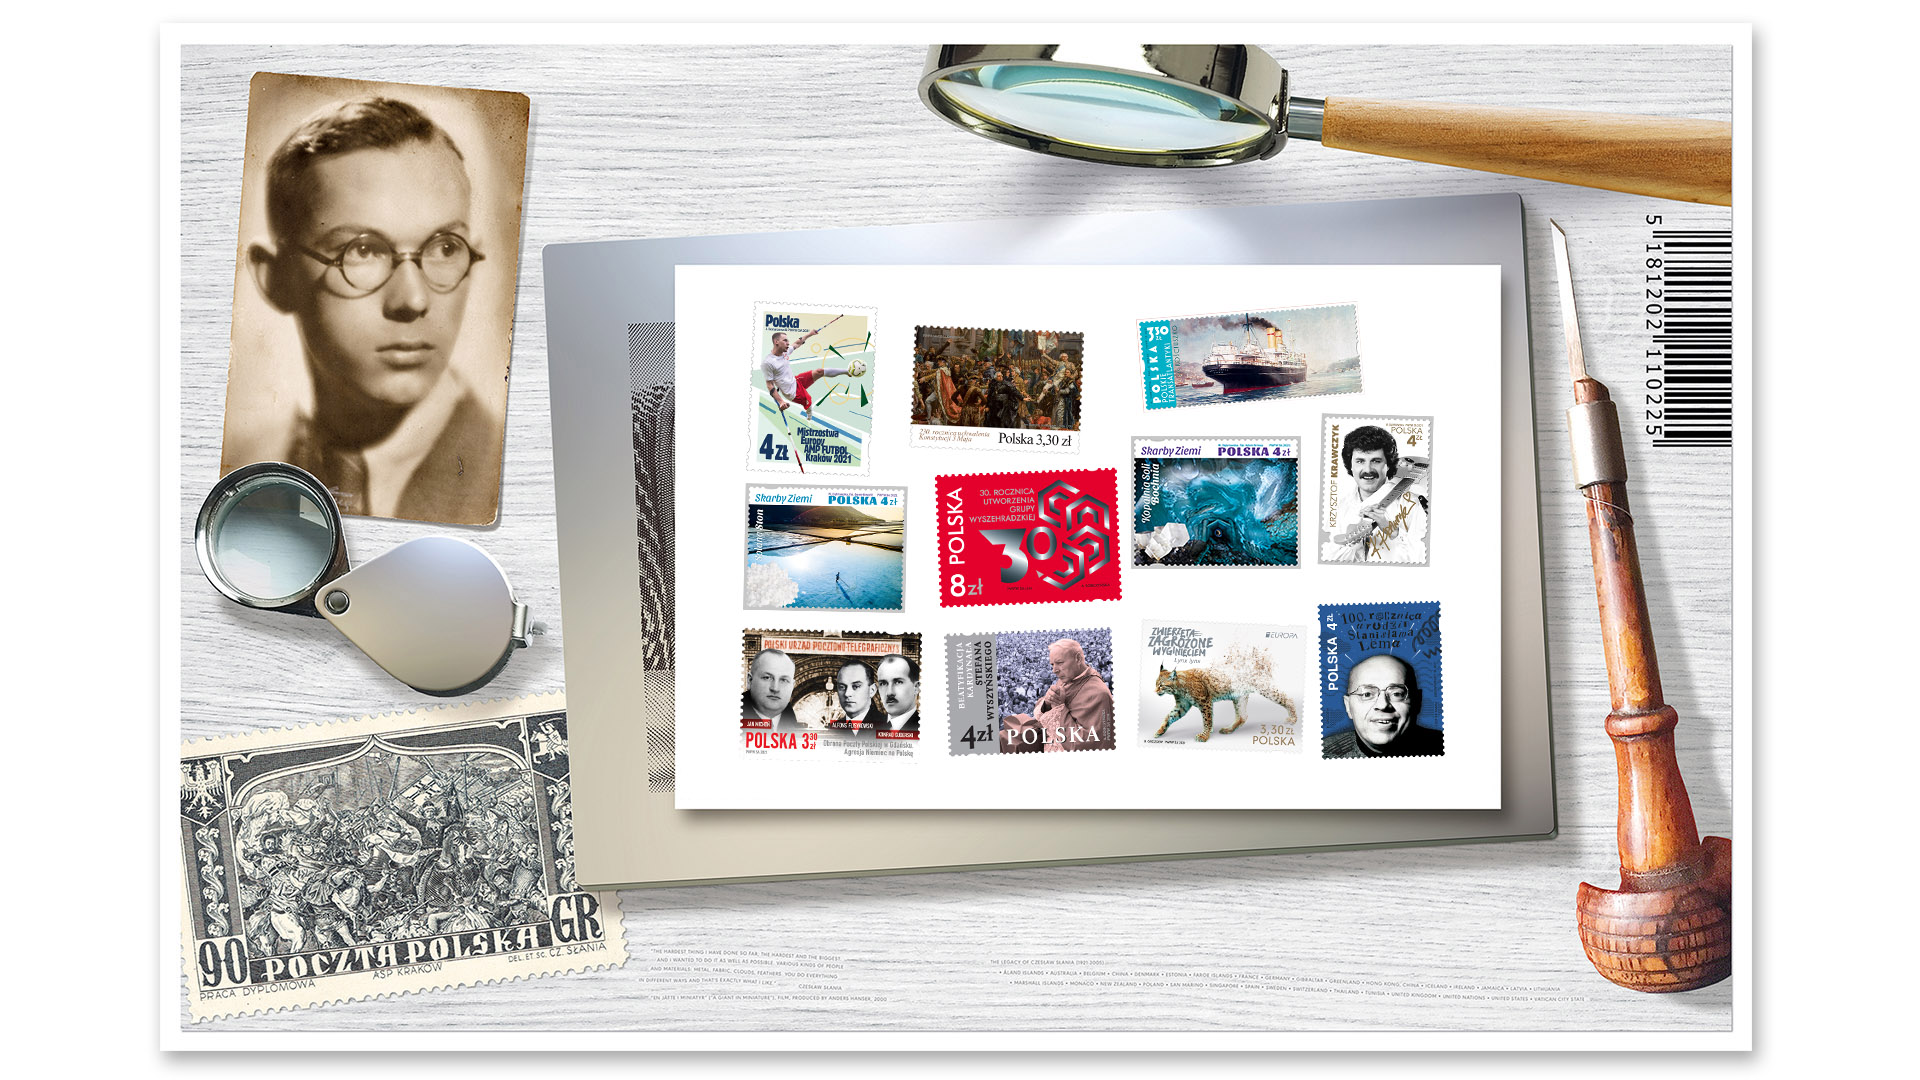 grafika znaczka pocztowego, a obok lupa, szkiełko powiększające i stare zdjęcie młodego mężczyzny w okularach